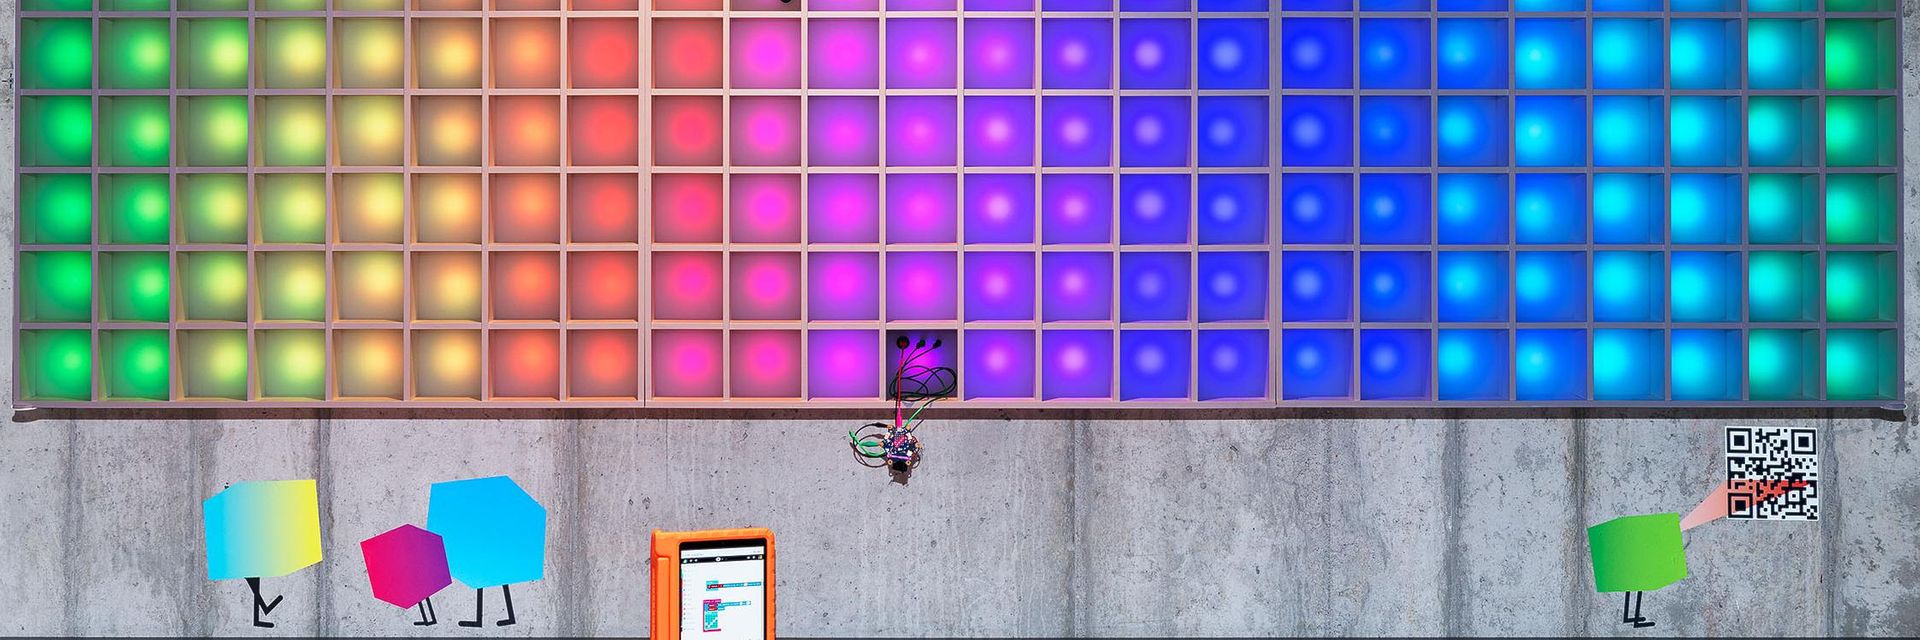 Die Pixelwand leuchtet in Regenbogenfarben.